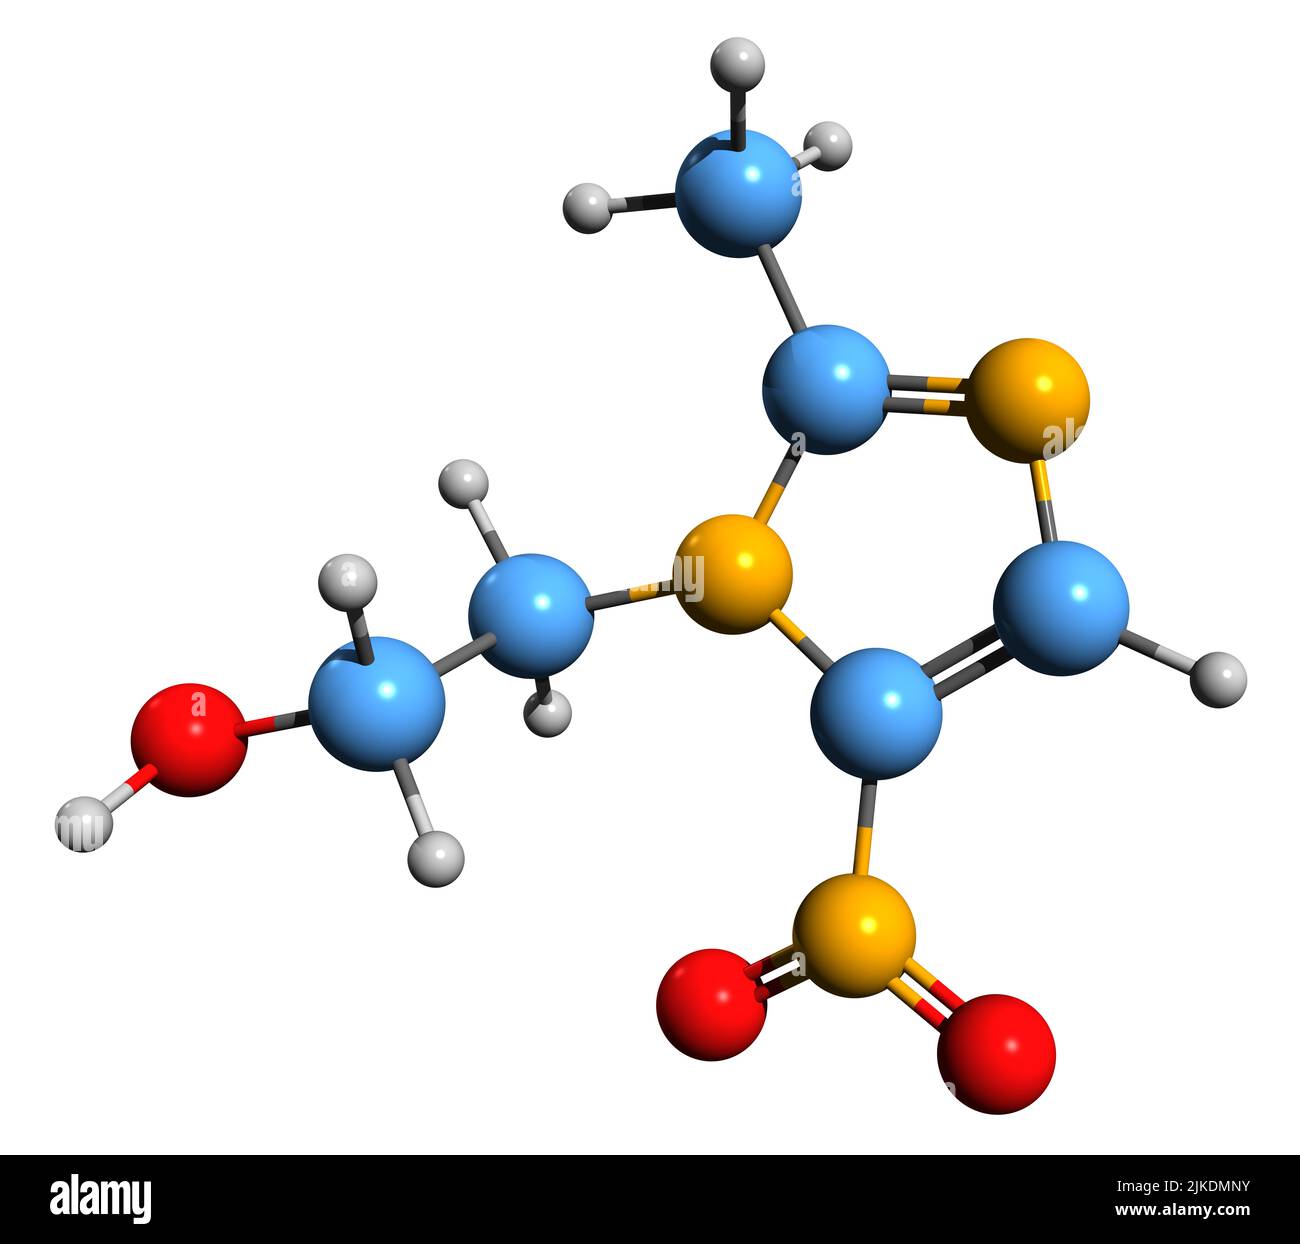 3D immagine di Metronidazole formula scheletrica - struttura chimica molecolare di antibiotici e farmaci antiprotozoici isolati su sfondo bianco Foto Stock